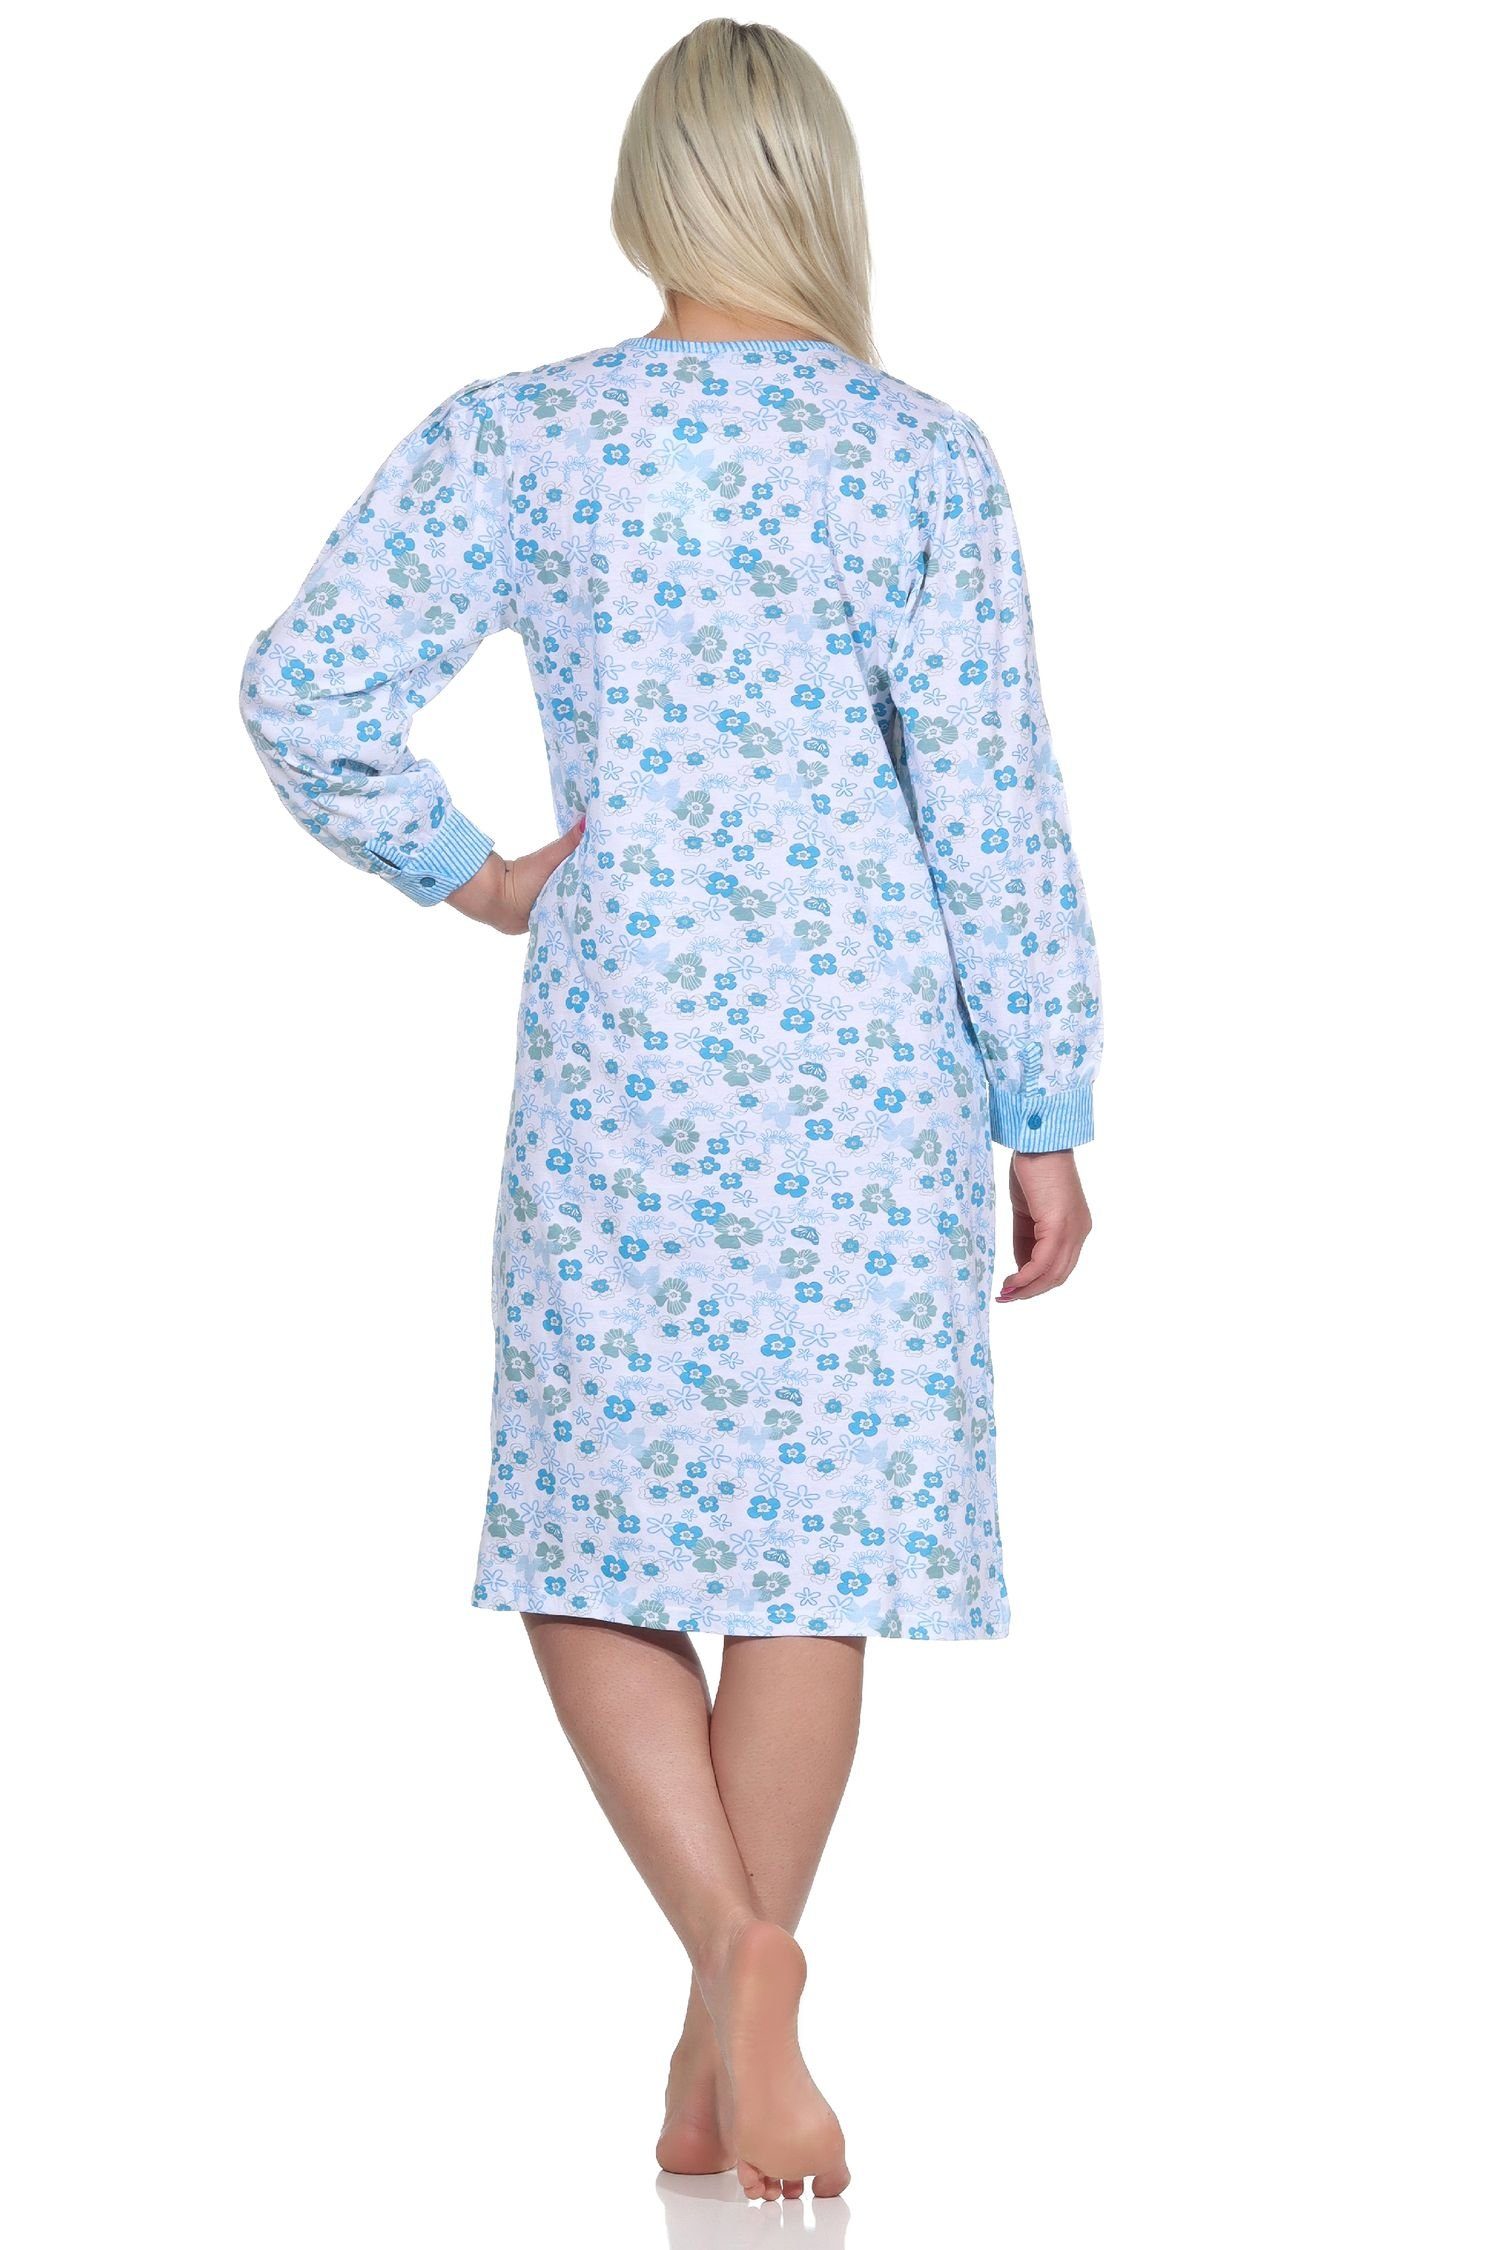 Normann mit Frauliches Damen Nachthemd Nachthemd am Bündchen,cm Länge, Hals Knopfleiste blau